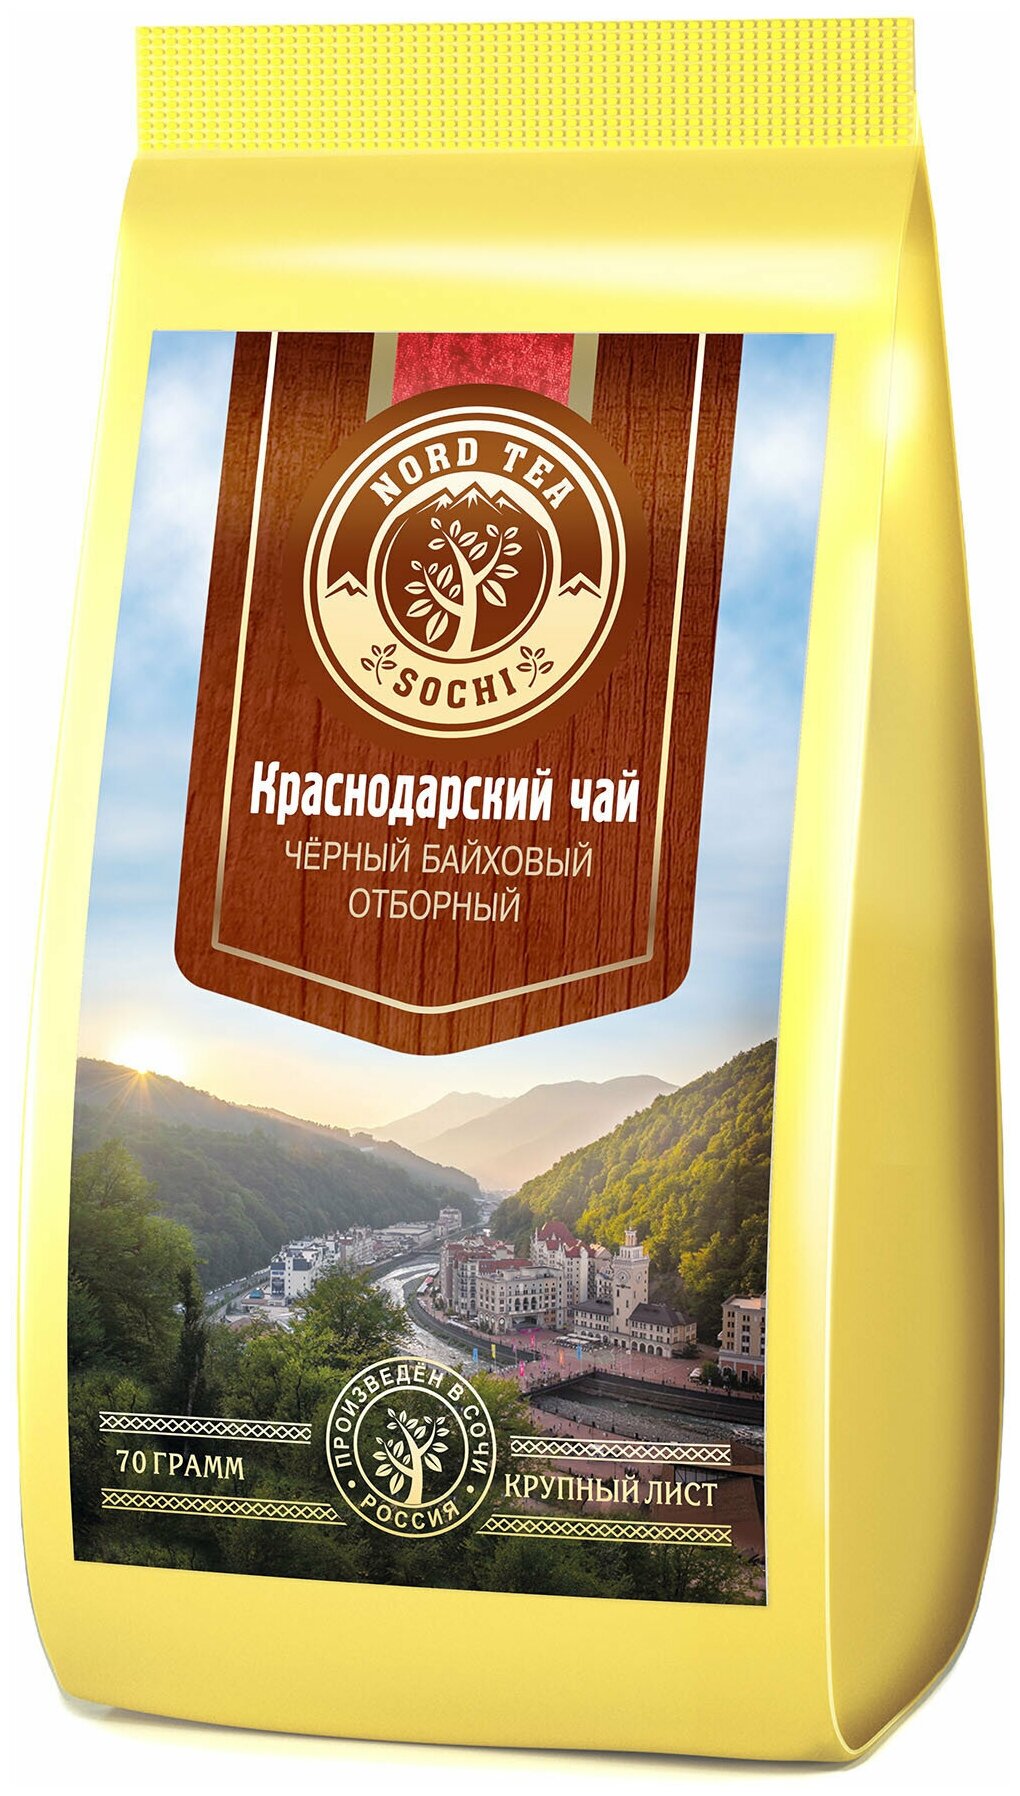 Краснодарский чай 70гр черный Отборный Nord Tea Sochi Gold